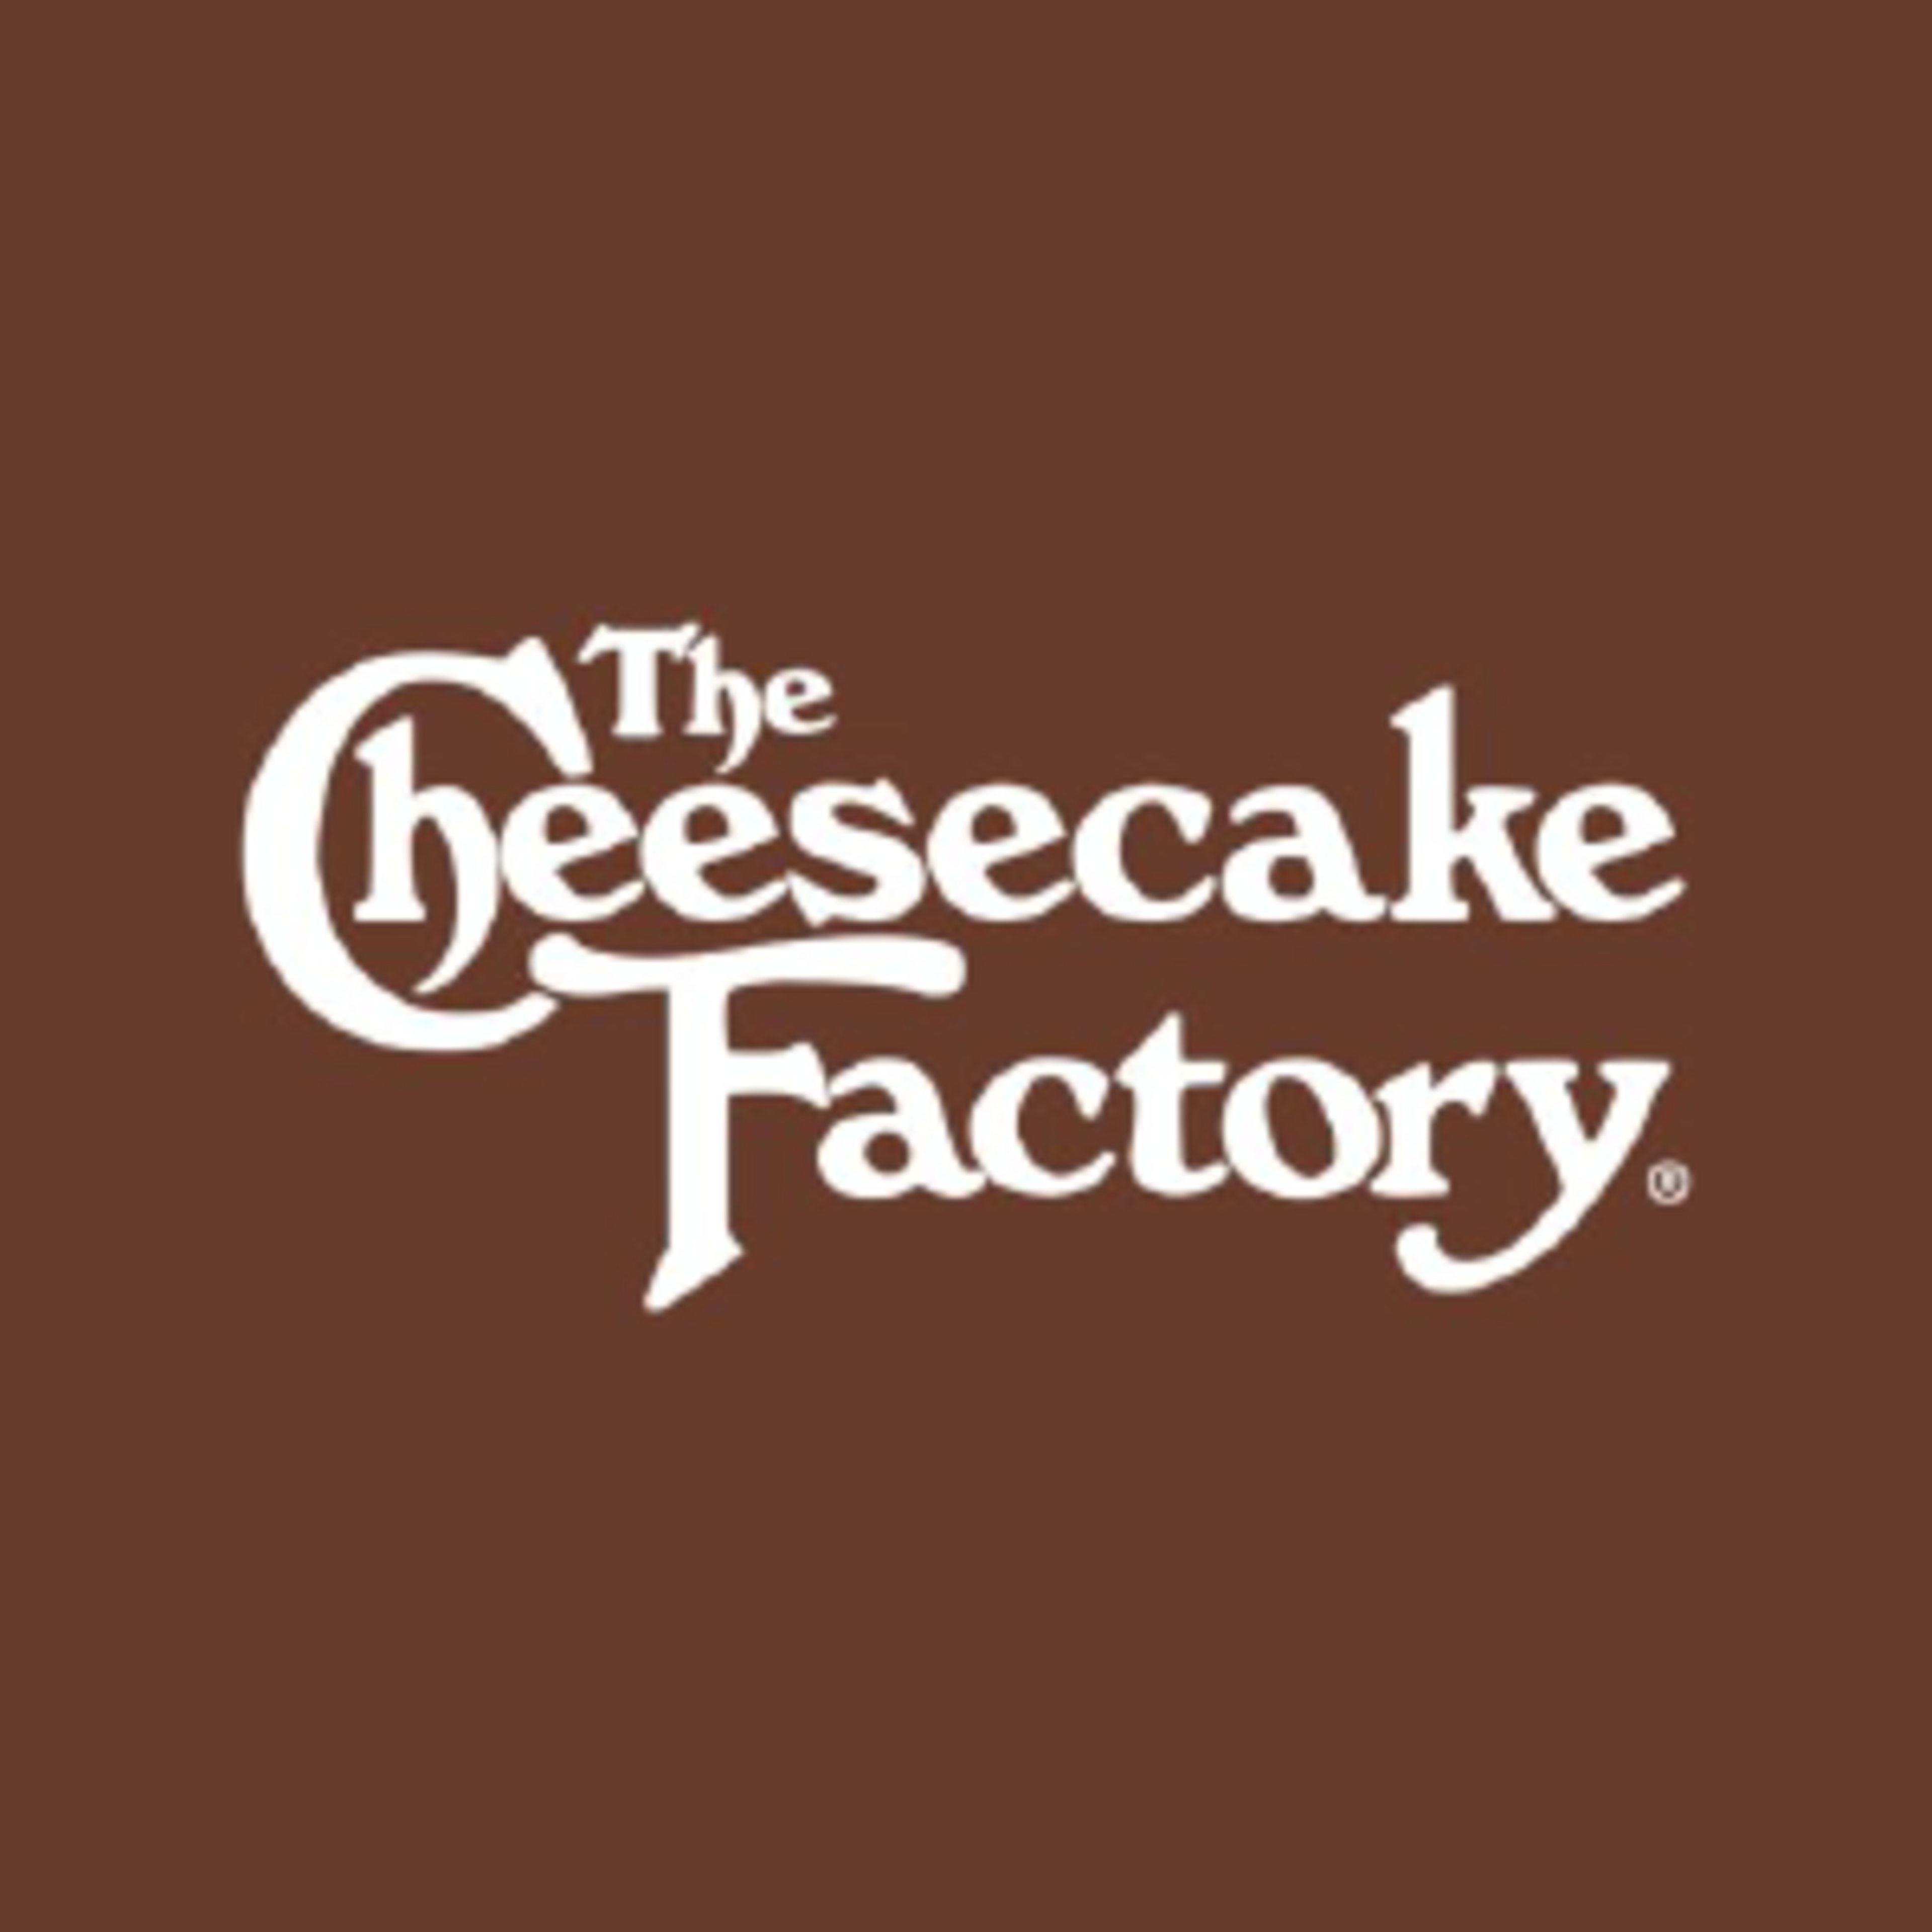 Cheesecake FactoryCode